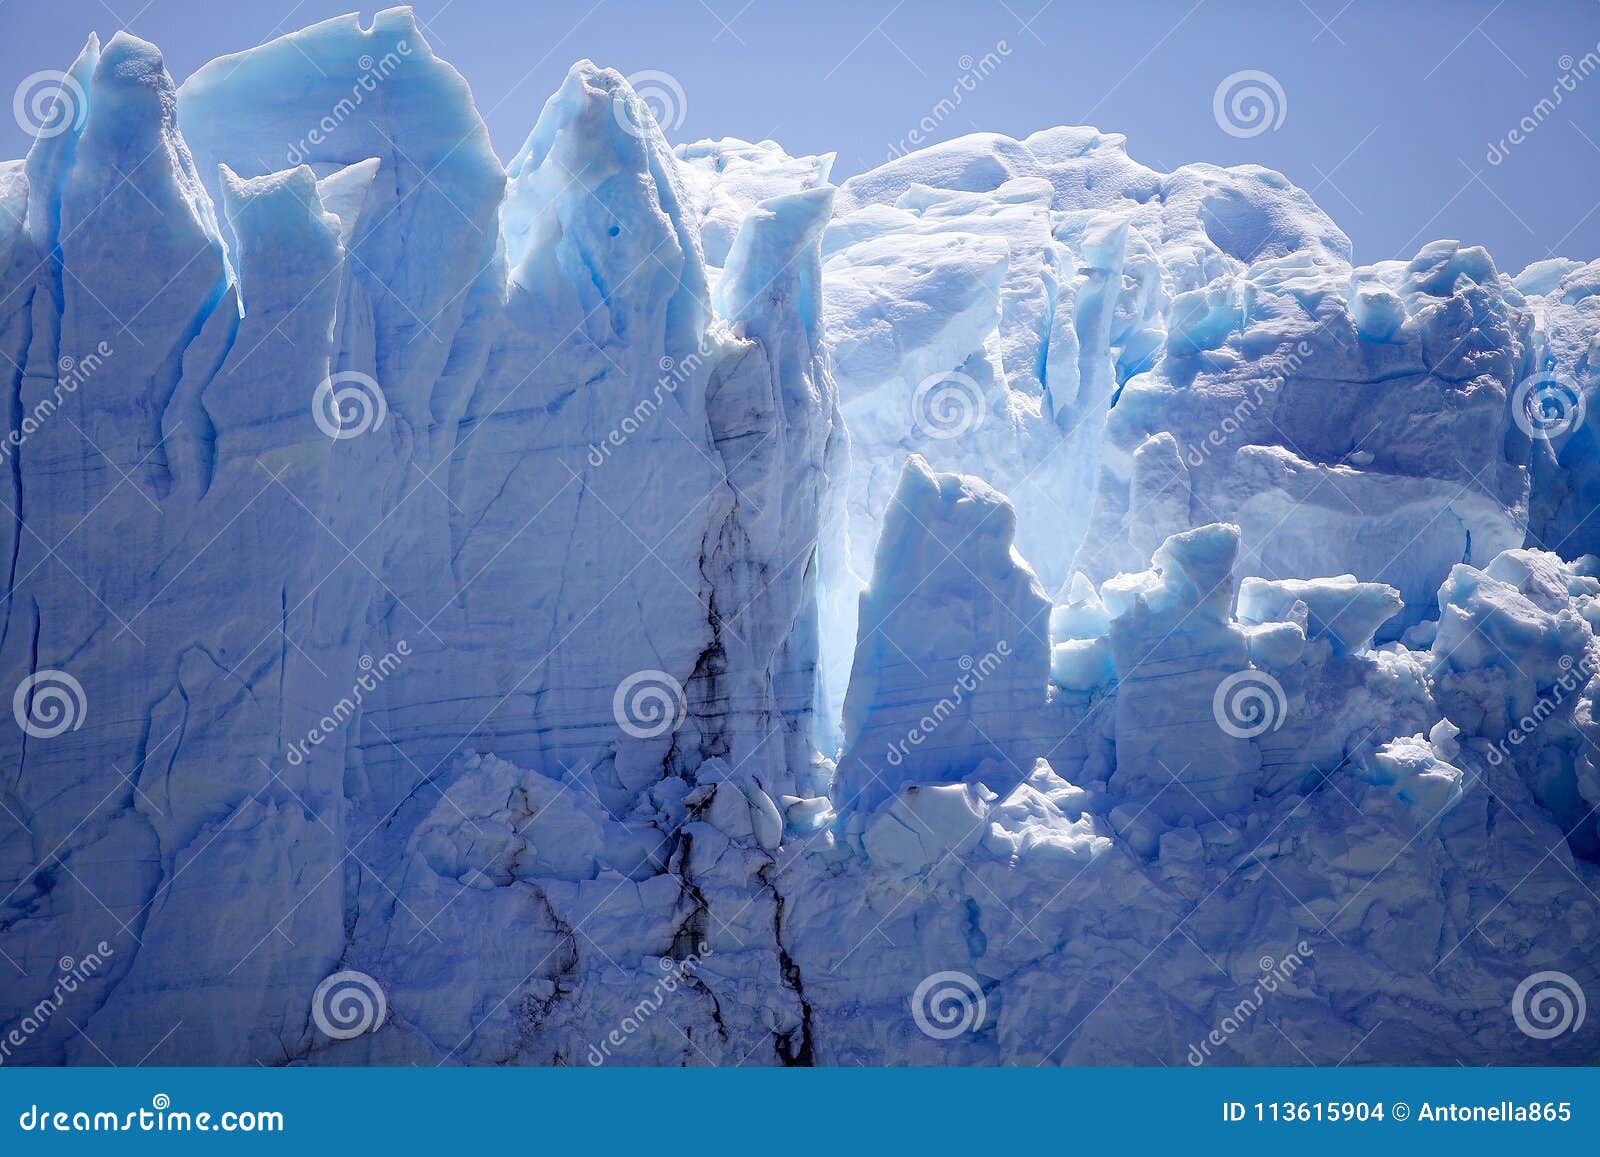 perito moreno glacier view from brazo rico in the argentino lake in patagonia, argentina